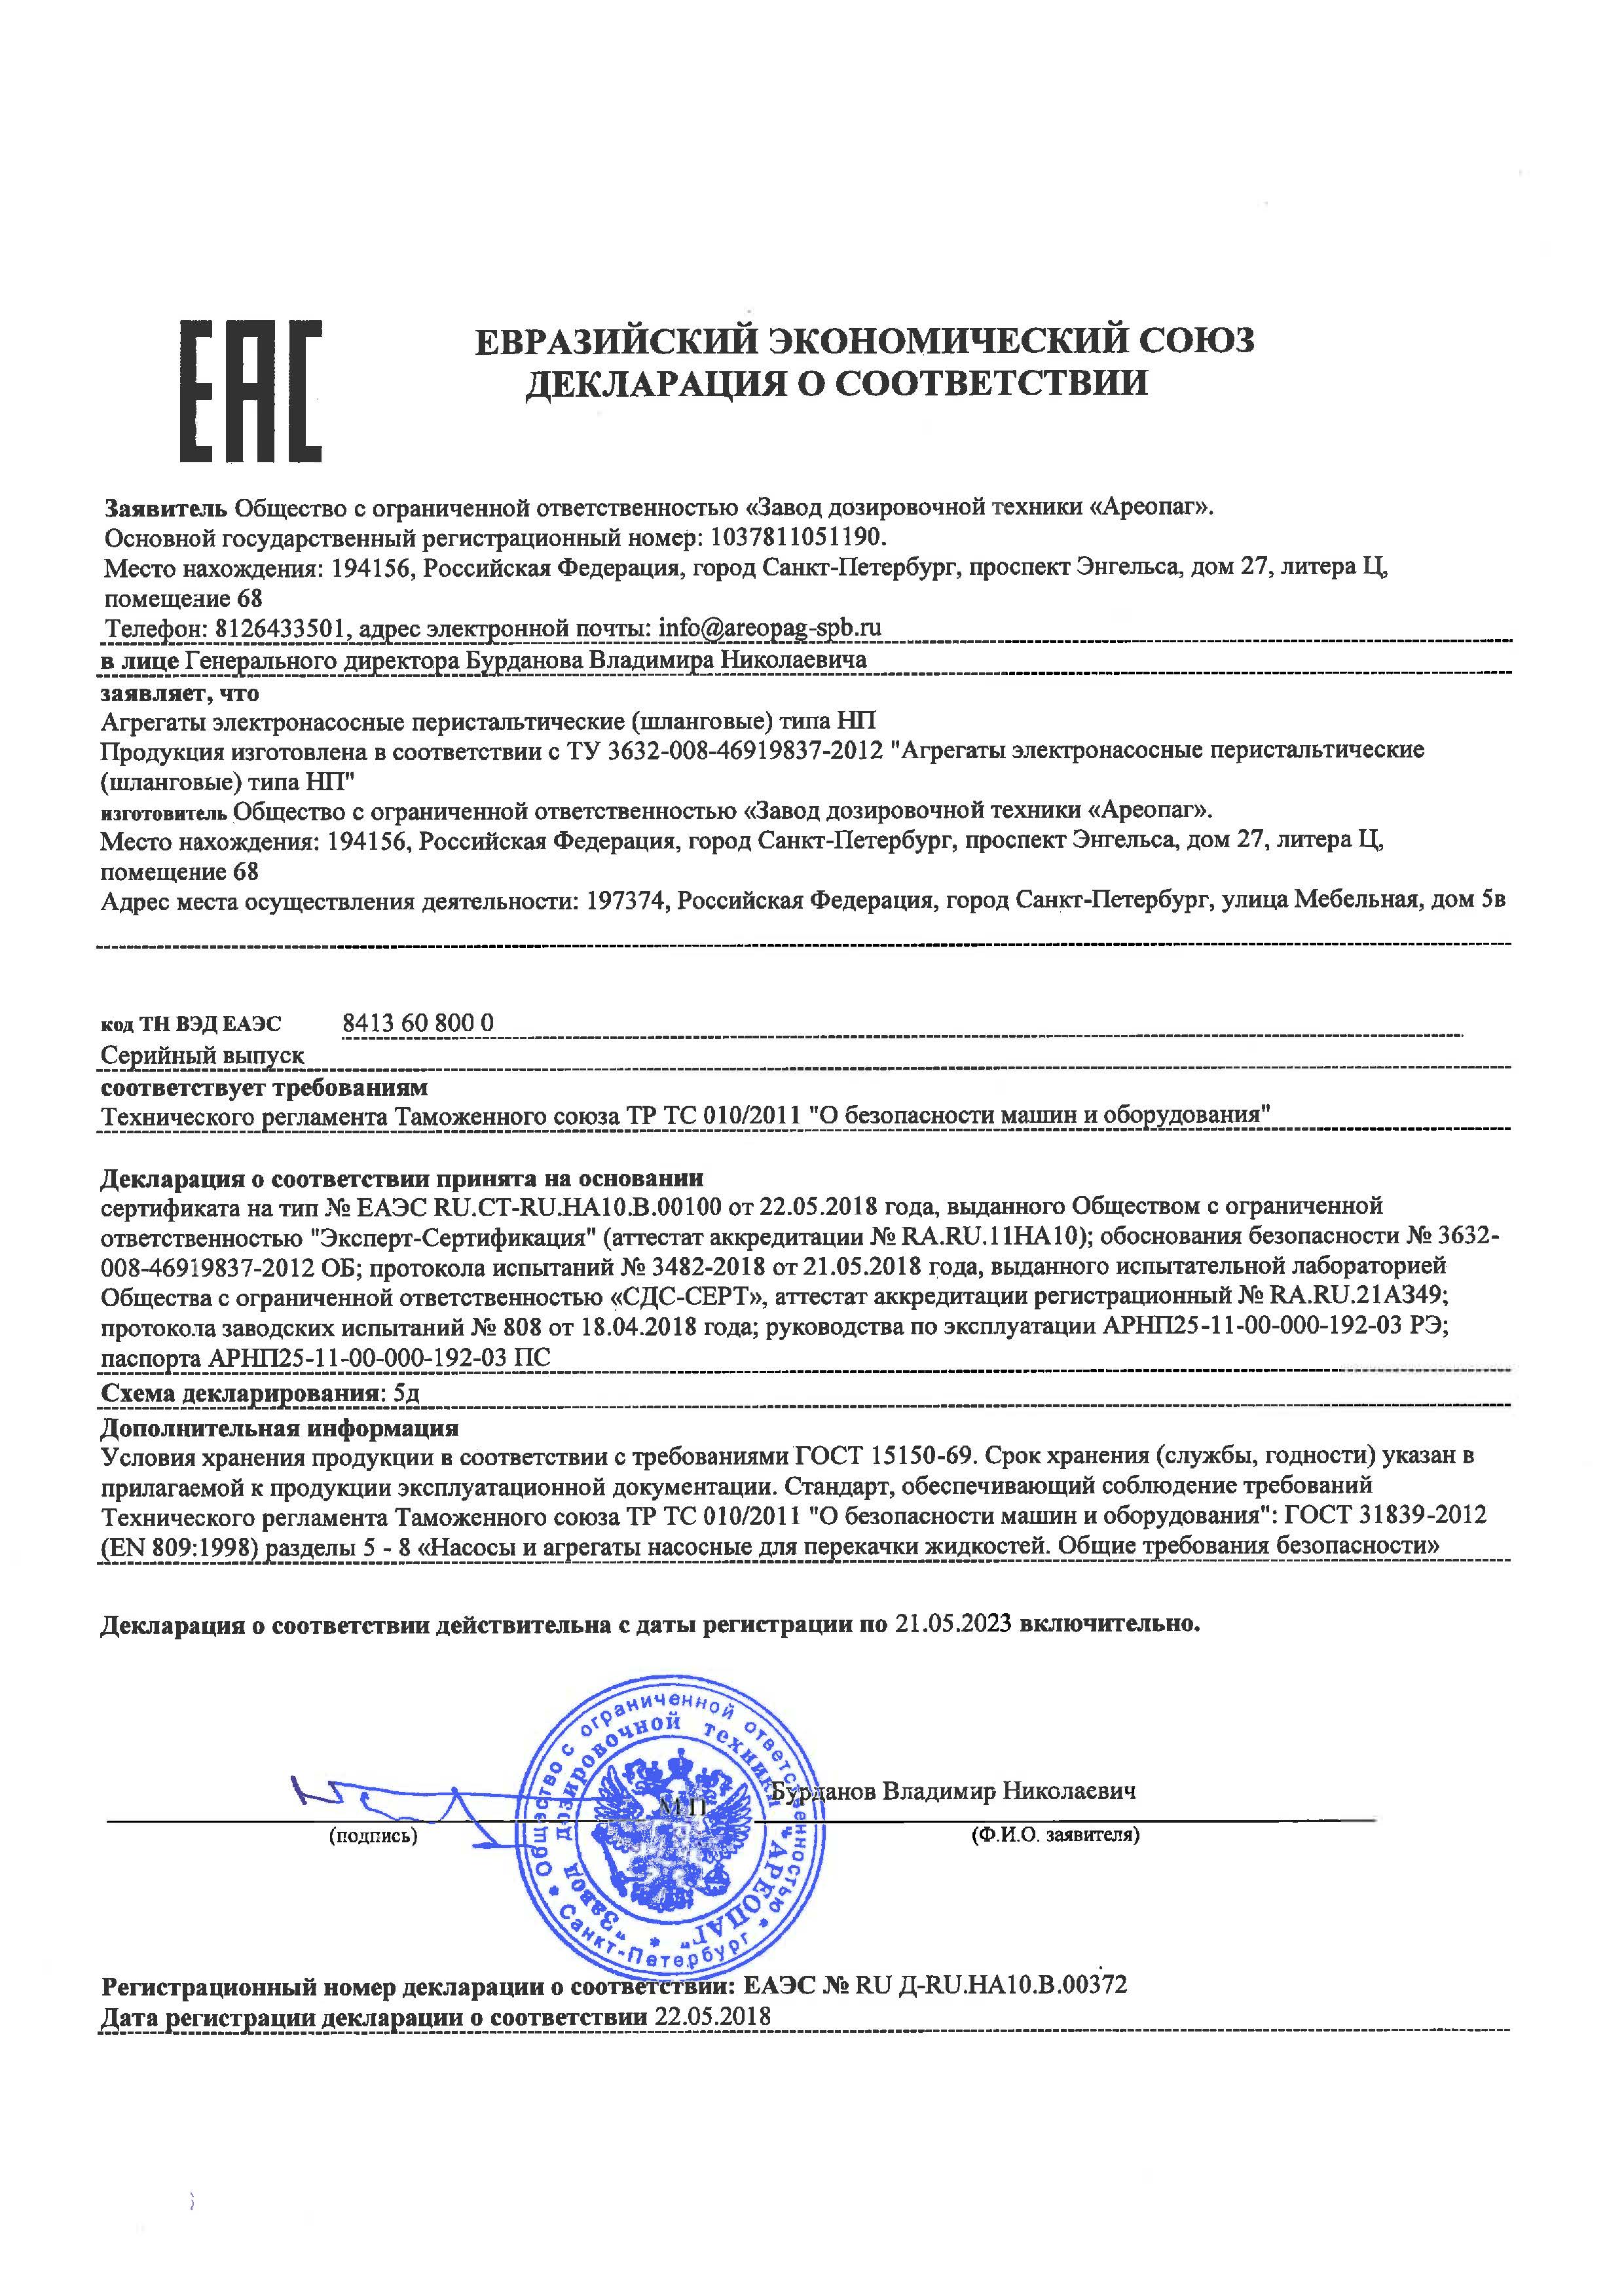 Декларация о соответствии ЕАЭС № RU Д-RU НА10.В.00372. Агрегаты электронасосные перистальтические (шланговые) типа НП. ТУ 3632-008-46919837 2012. 